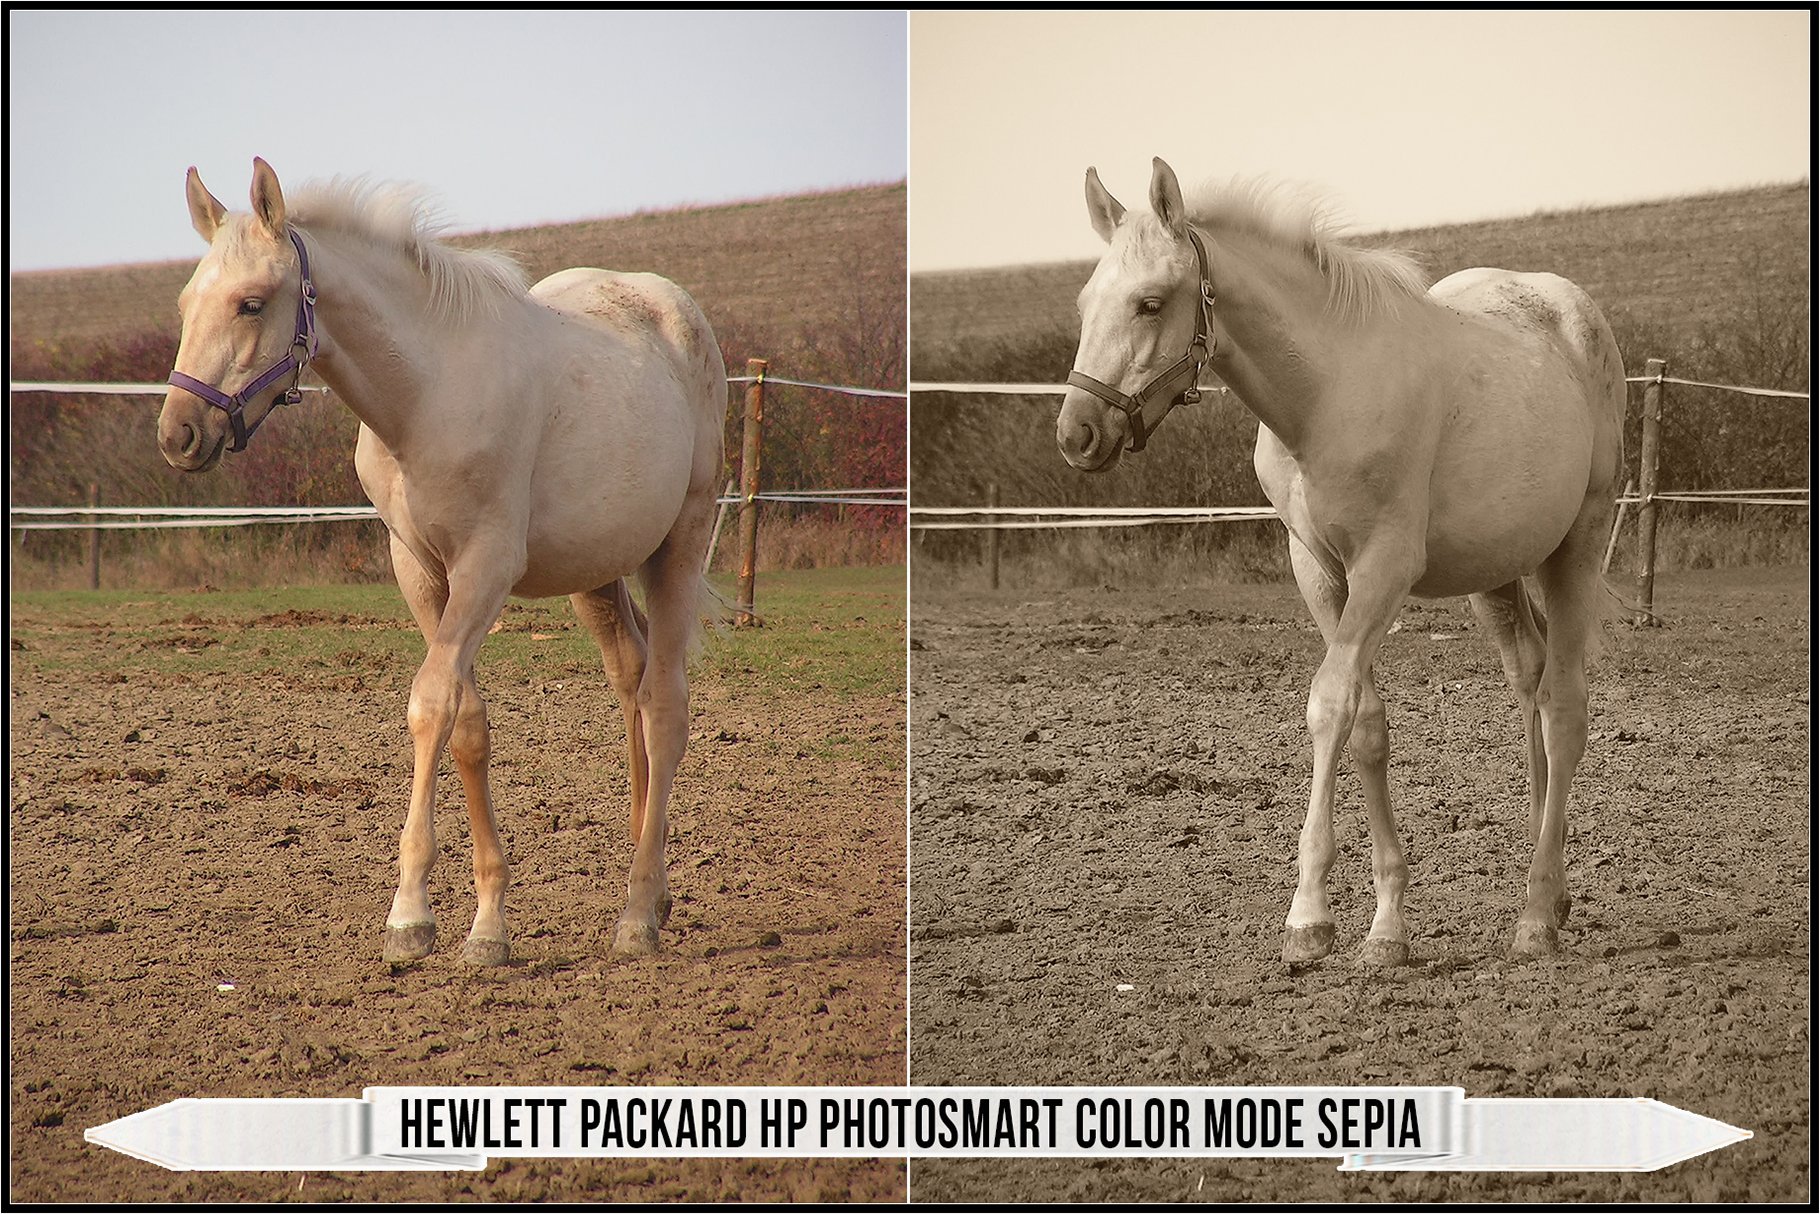 hewlett packard hp photosmart color mode sepia 995